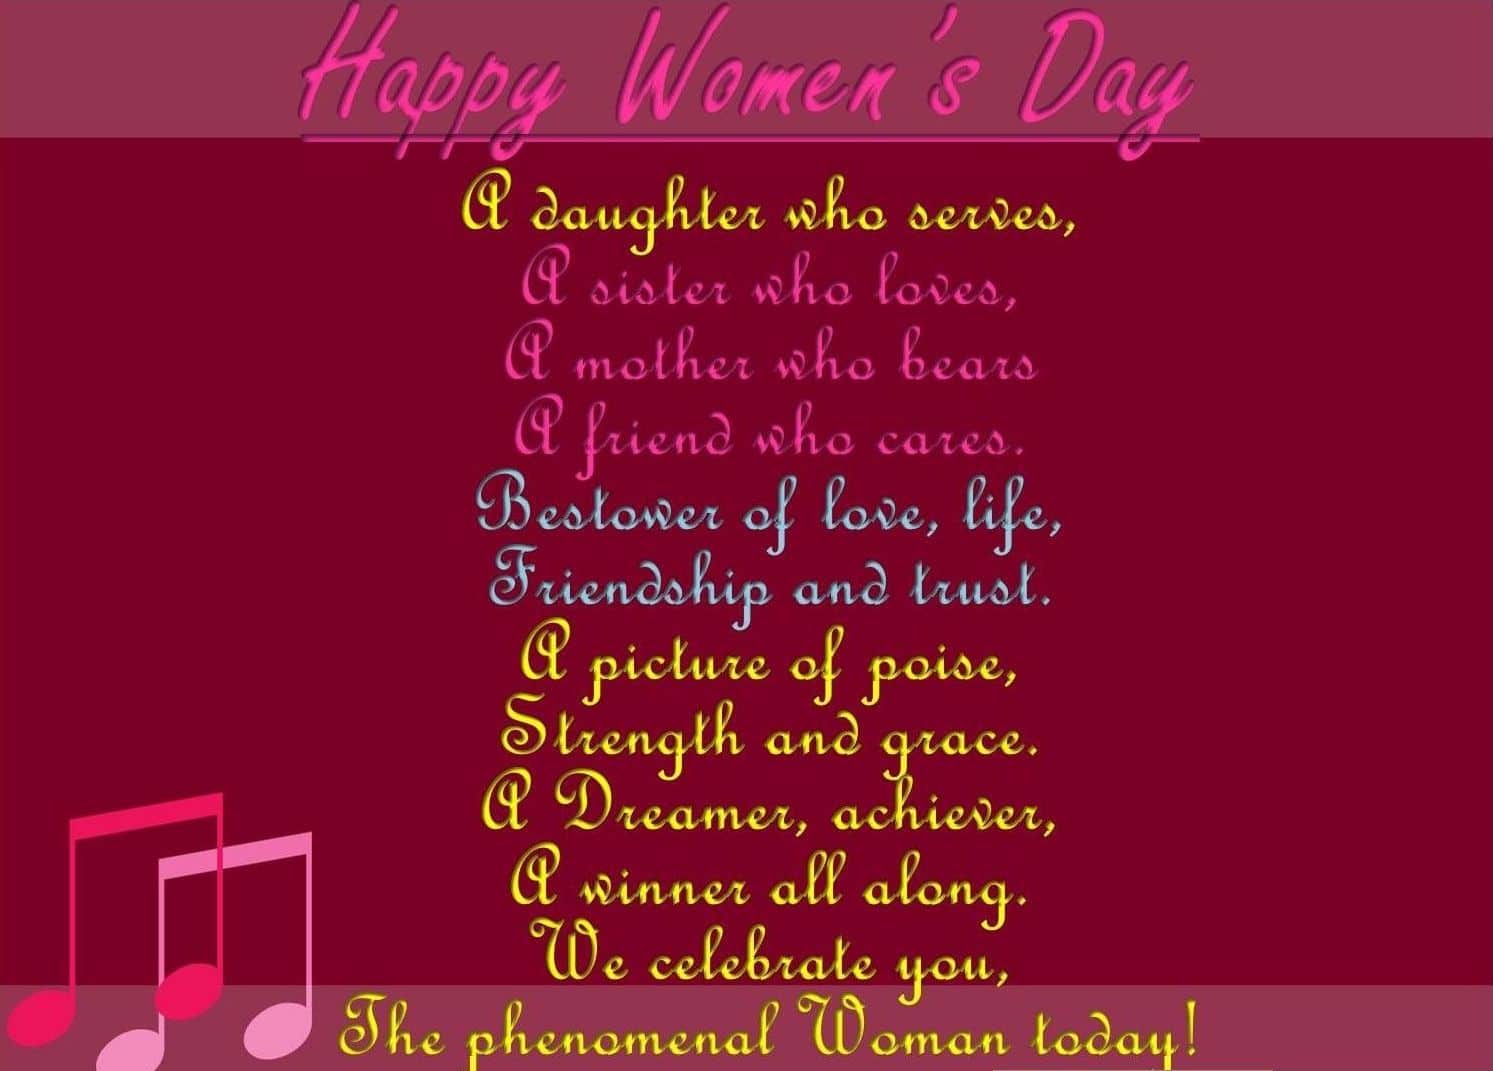 Happy Women's Day Poem